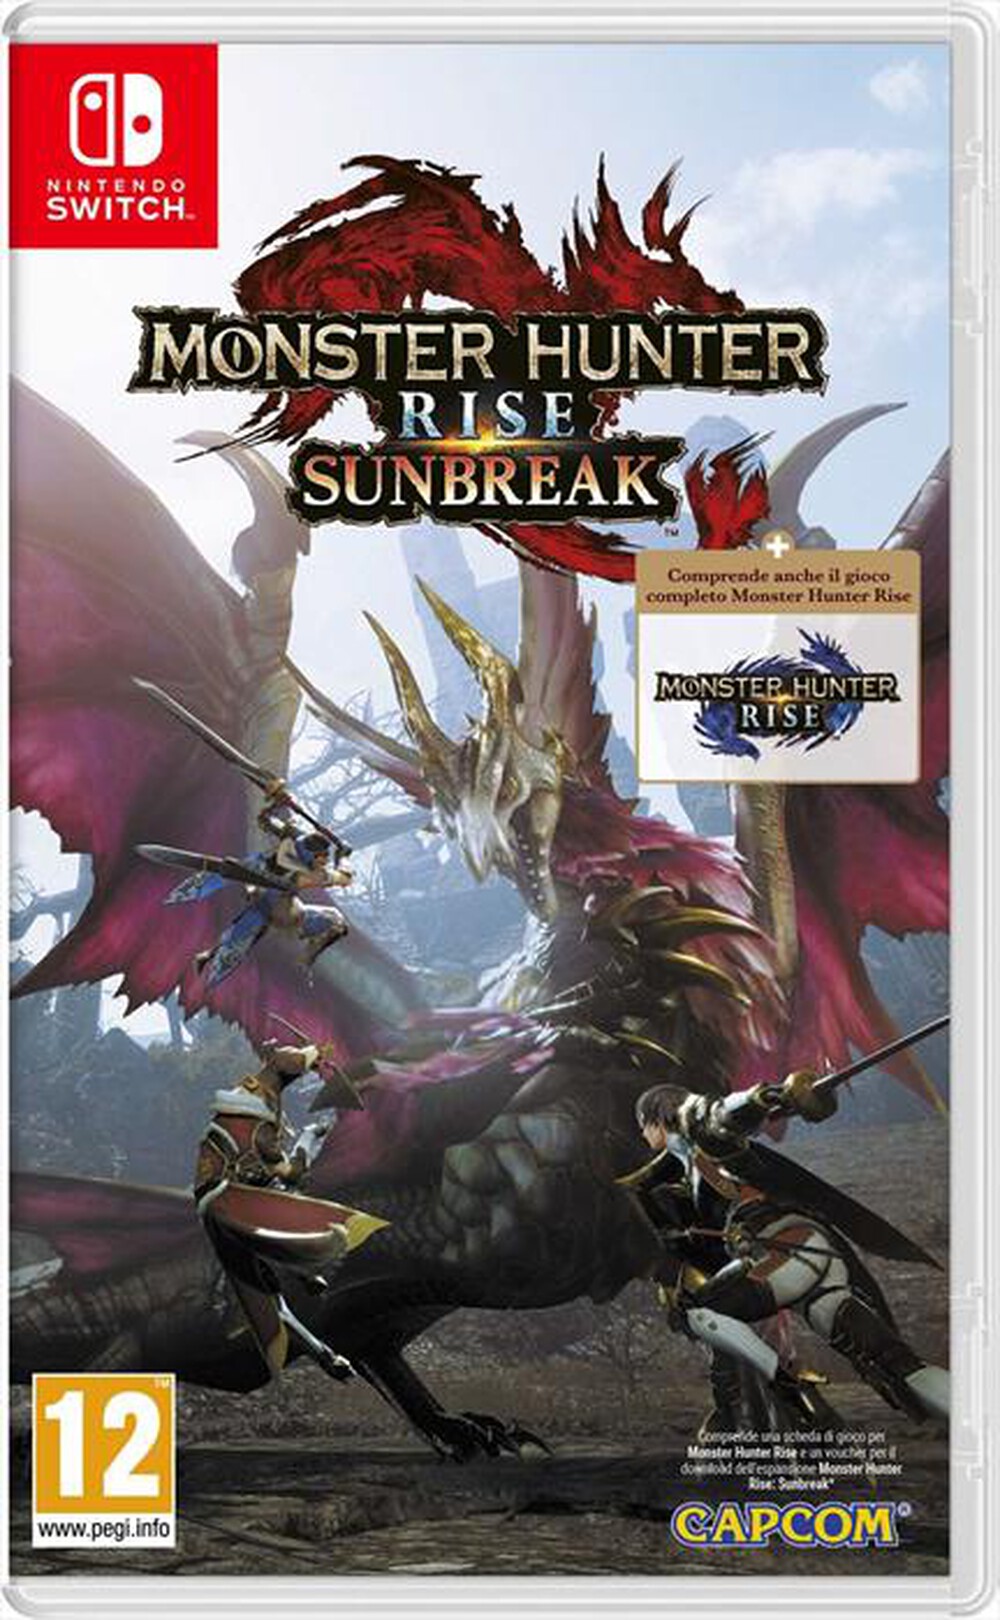 "NINTENDO - Monster Hunter Rise: Sunbreak"